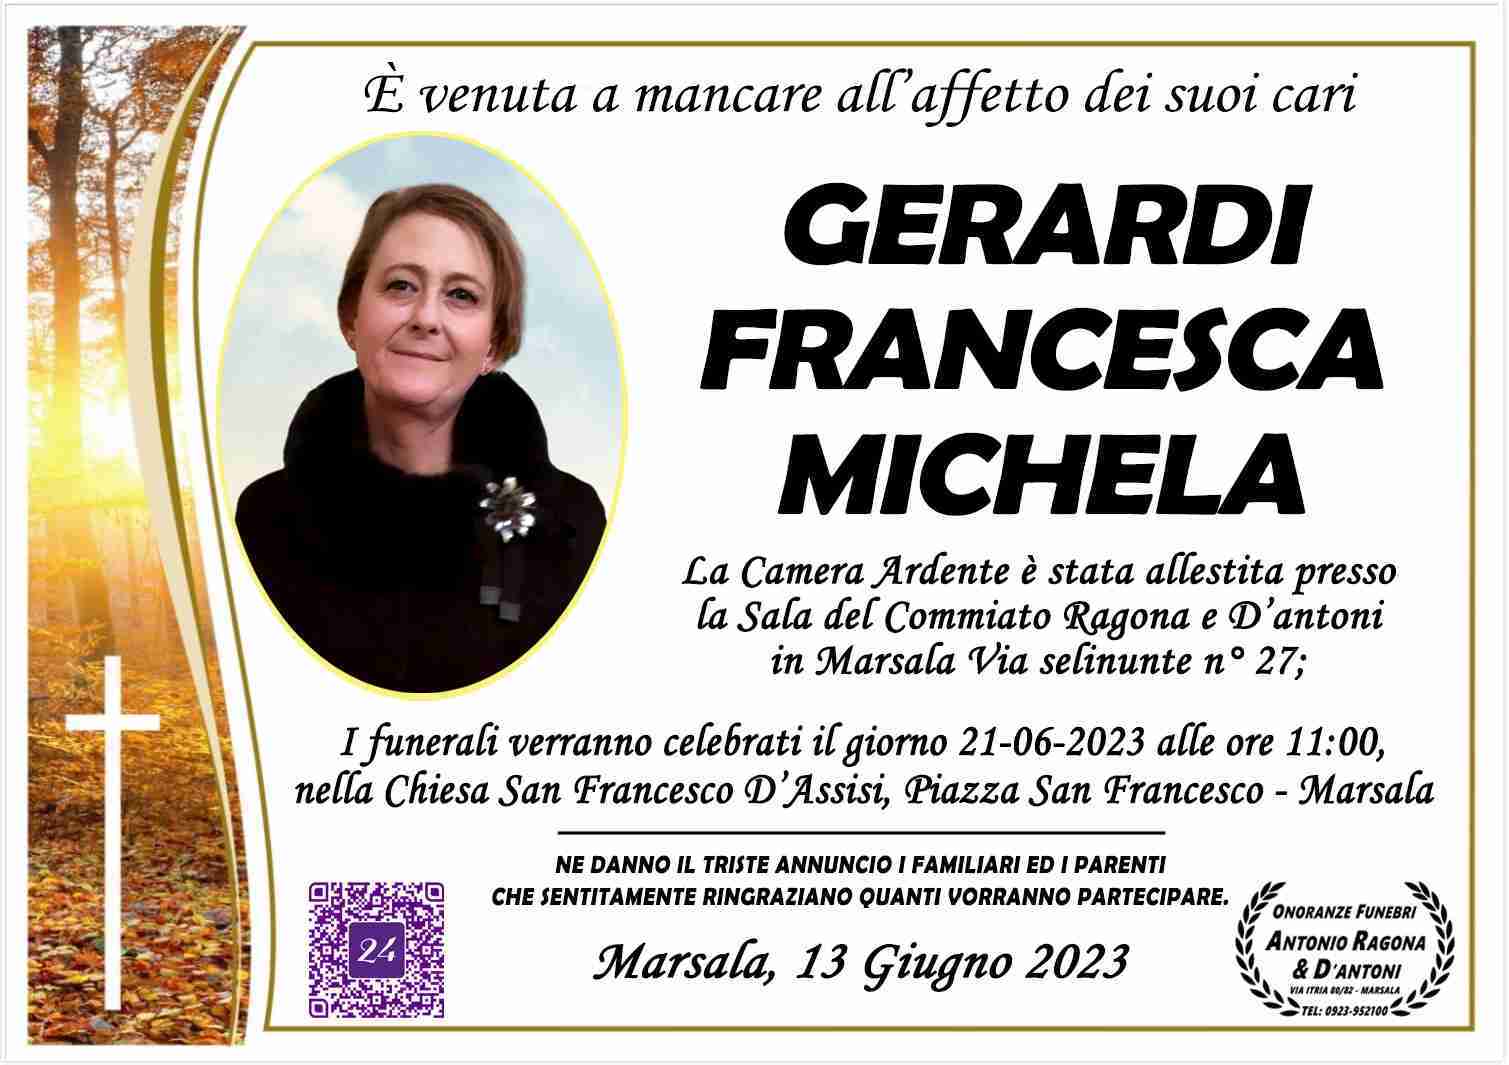 Francesca Michela Gerardi